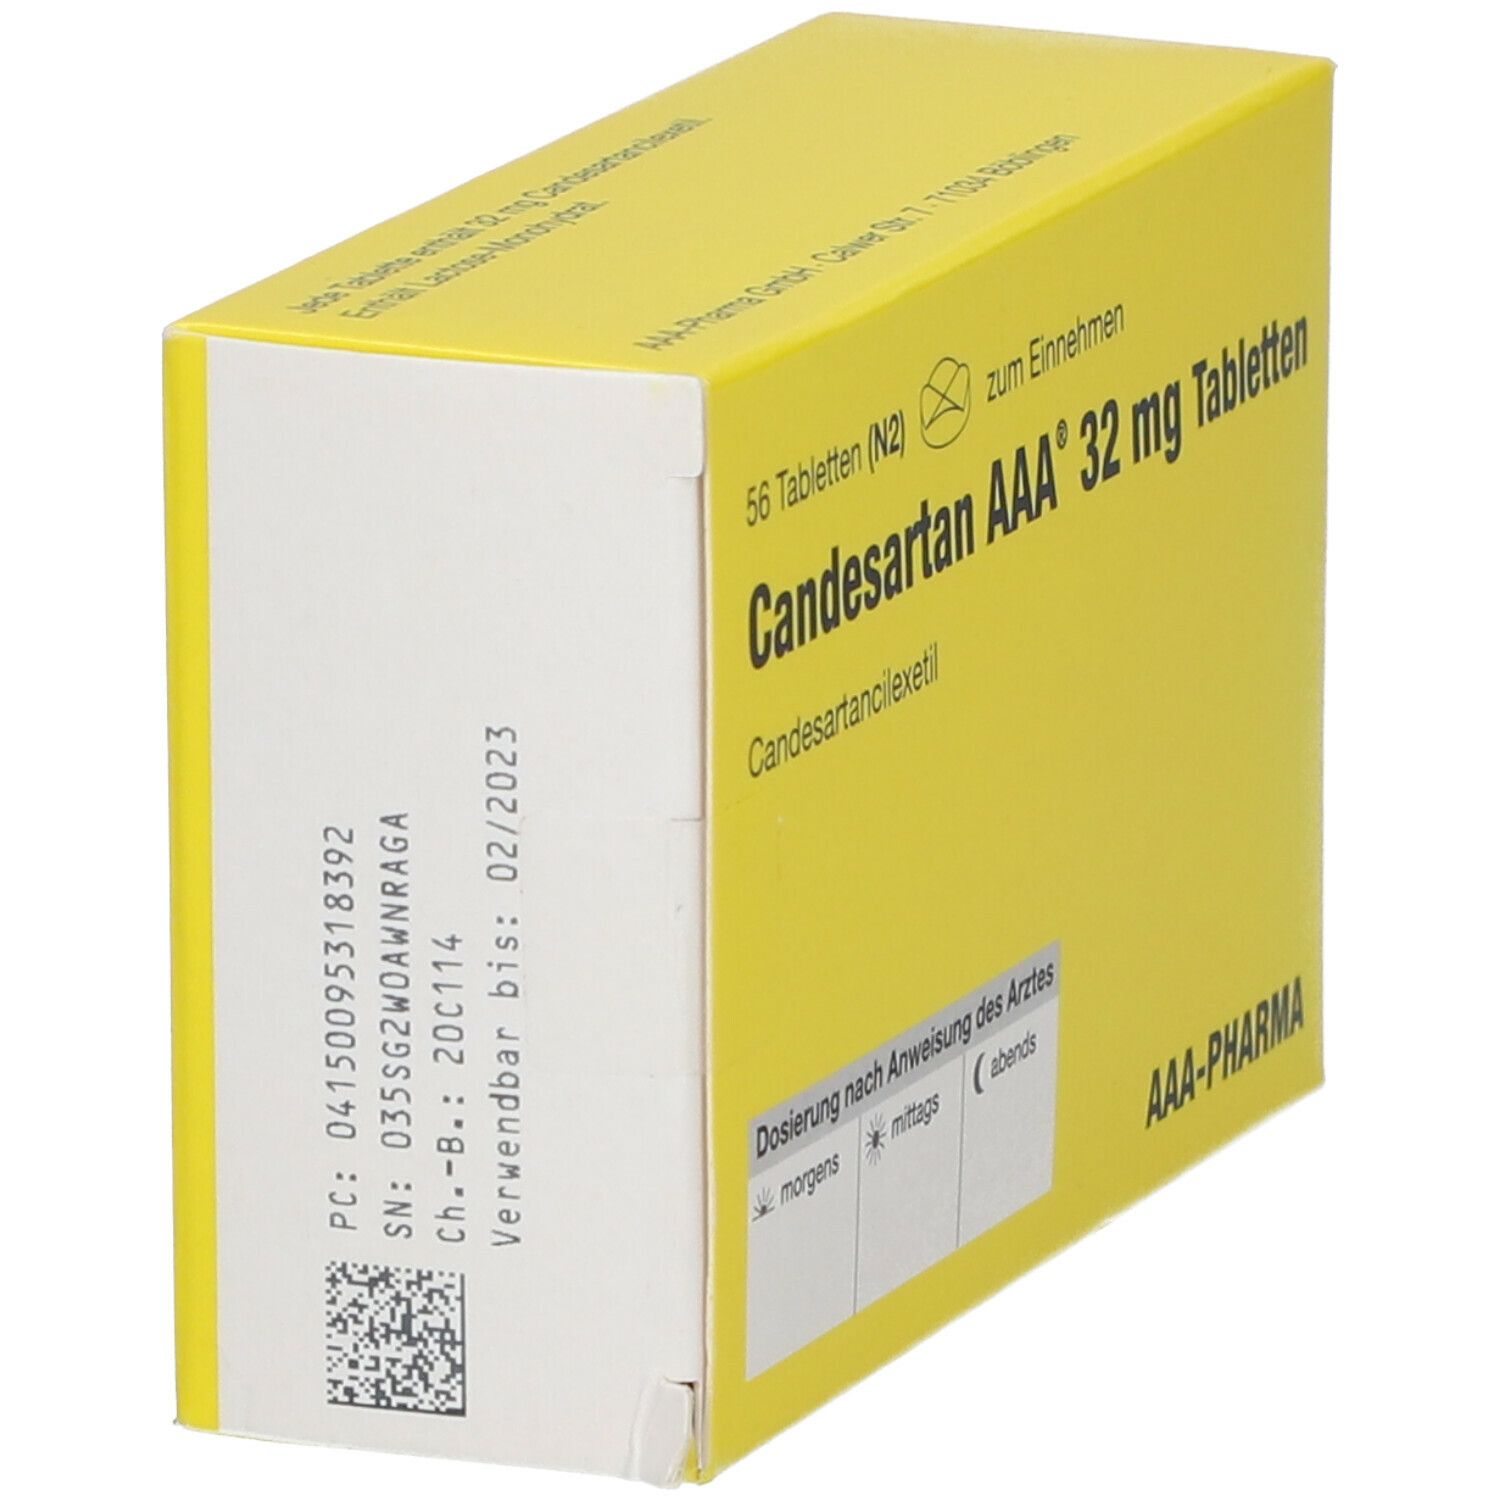 Candesartan AAA® 32 mg